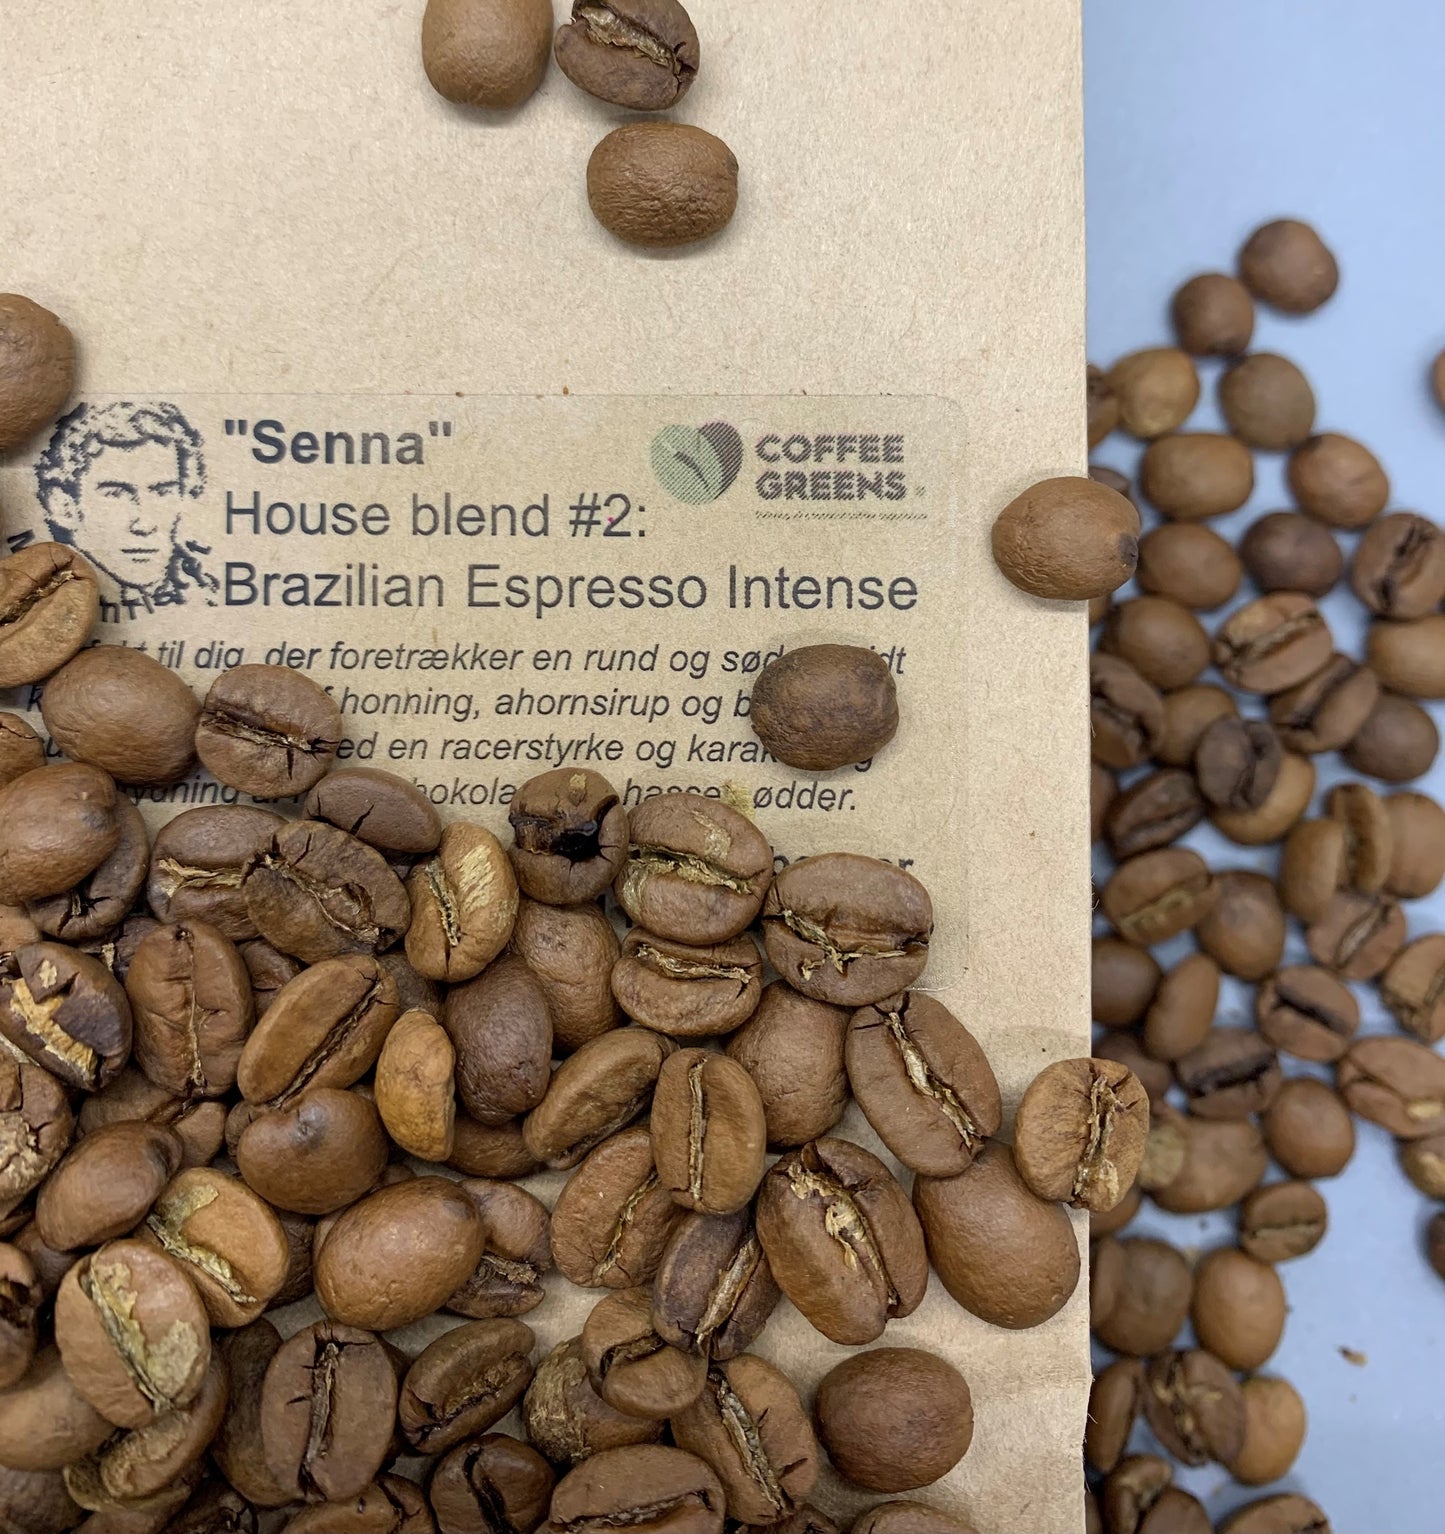 "Senna" - House blend #2: Brazilian Espresso Intense - Ristede kaffebønner